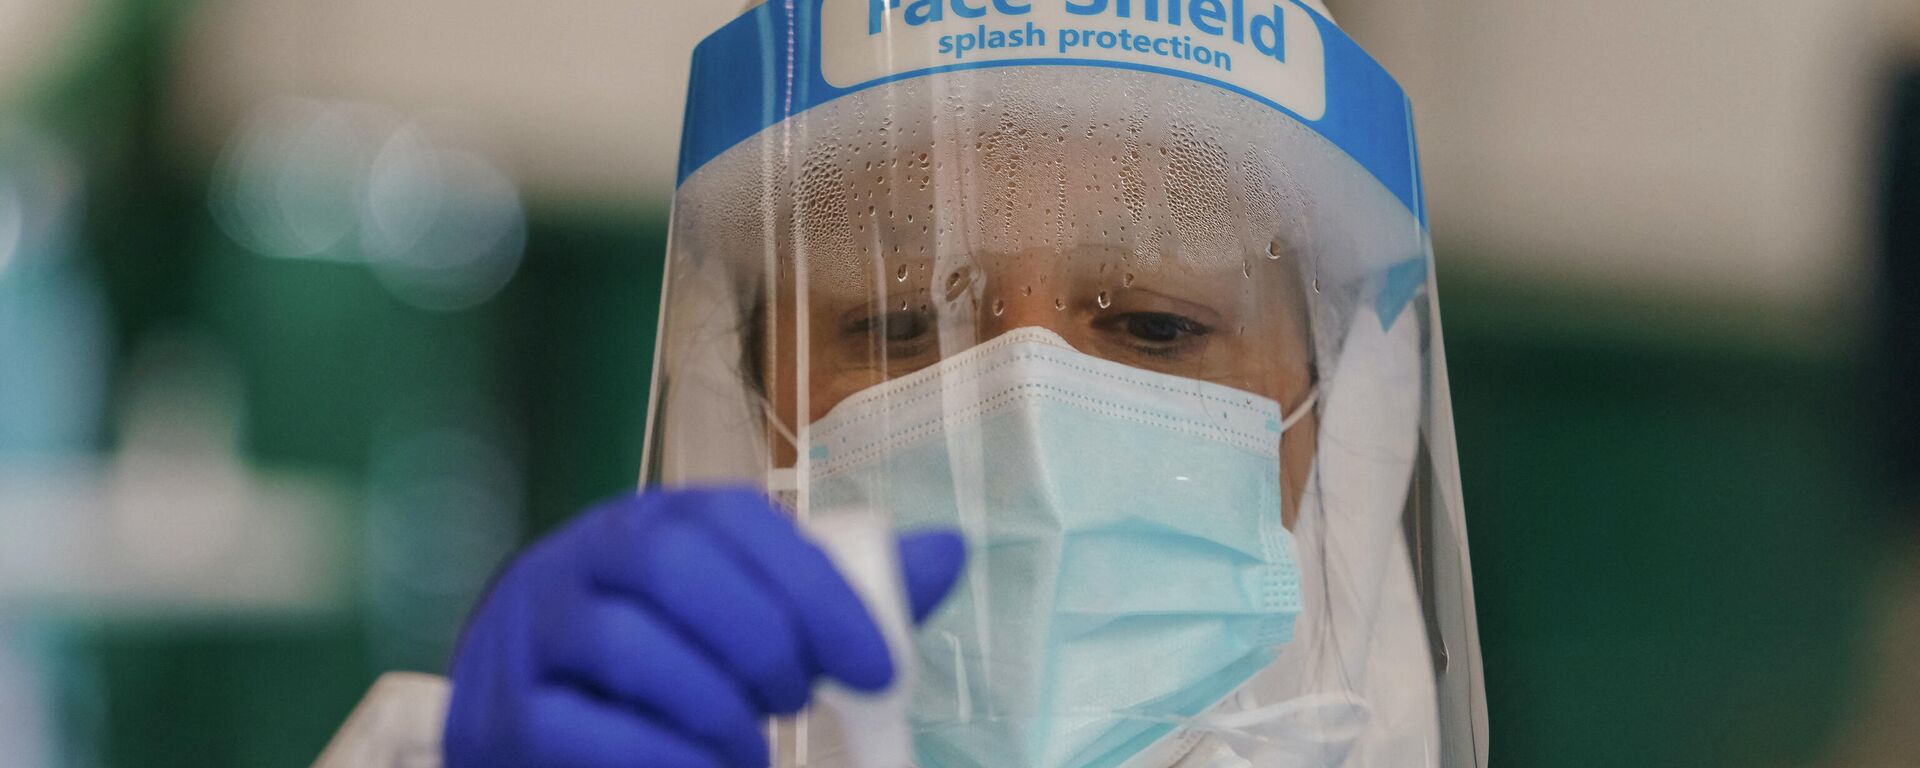 Un trabajador sanitario realiza una prueba rápida de antígeno para COVID-19  - Sputnik Mundo, 1920, 24.02.2021